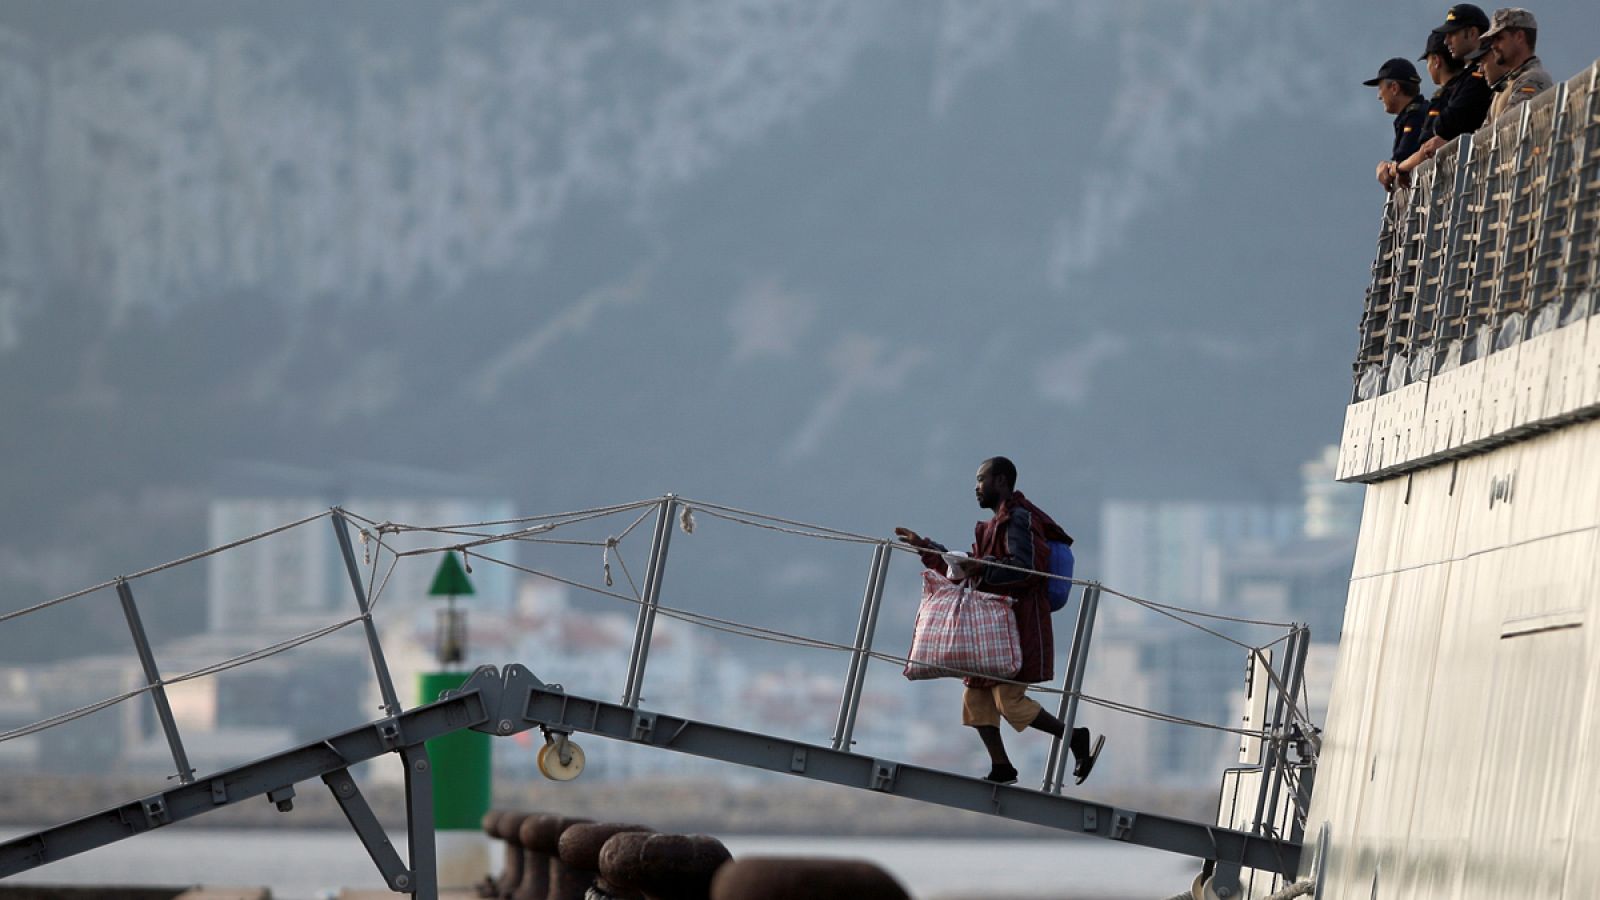 Crisis migratoria:El Audaz llega a San Roque con los migrantes del Open Arms a bordo